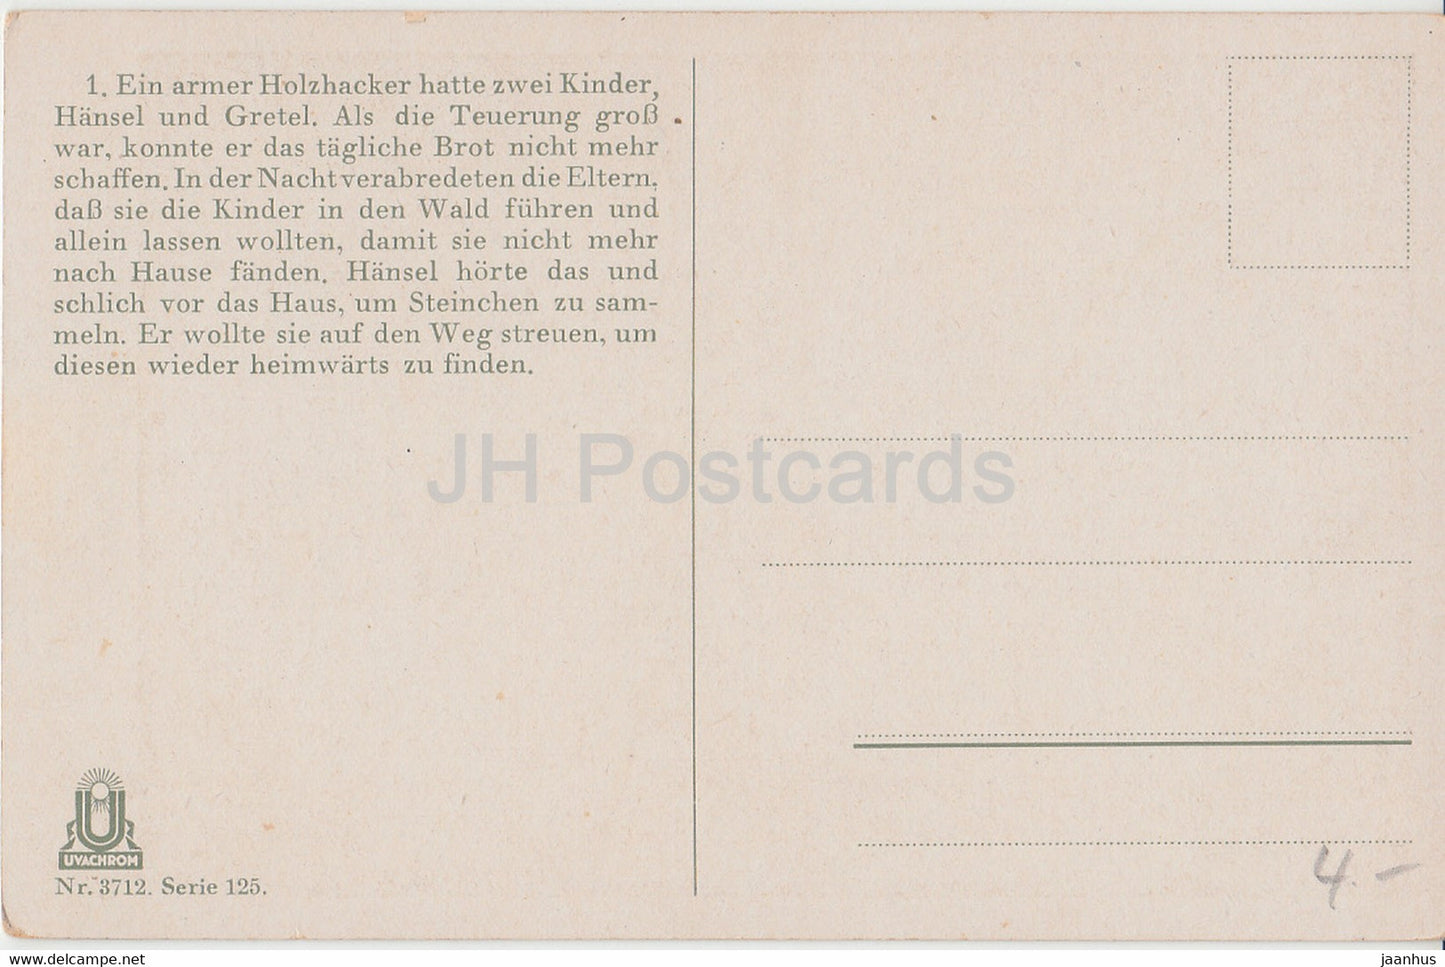 Bruder Grimm - Hansel und Gretel - illustration d'Otto Kubel - garçon - chat - Uvachrom 3712 - carte postale ancienne - inutilisée